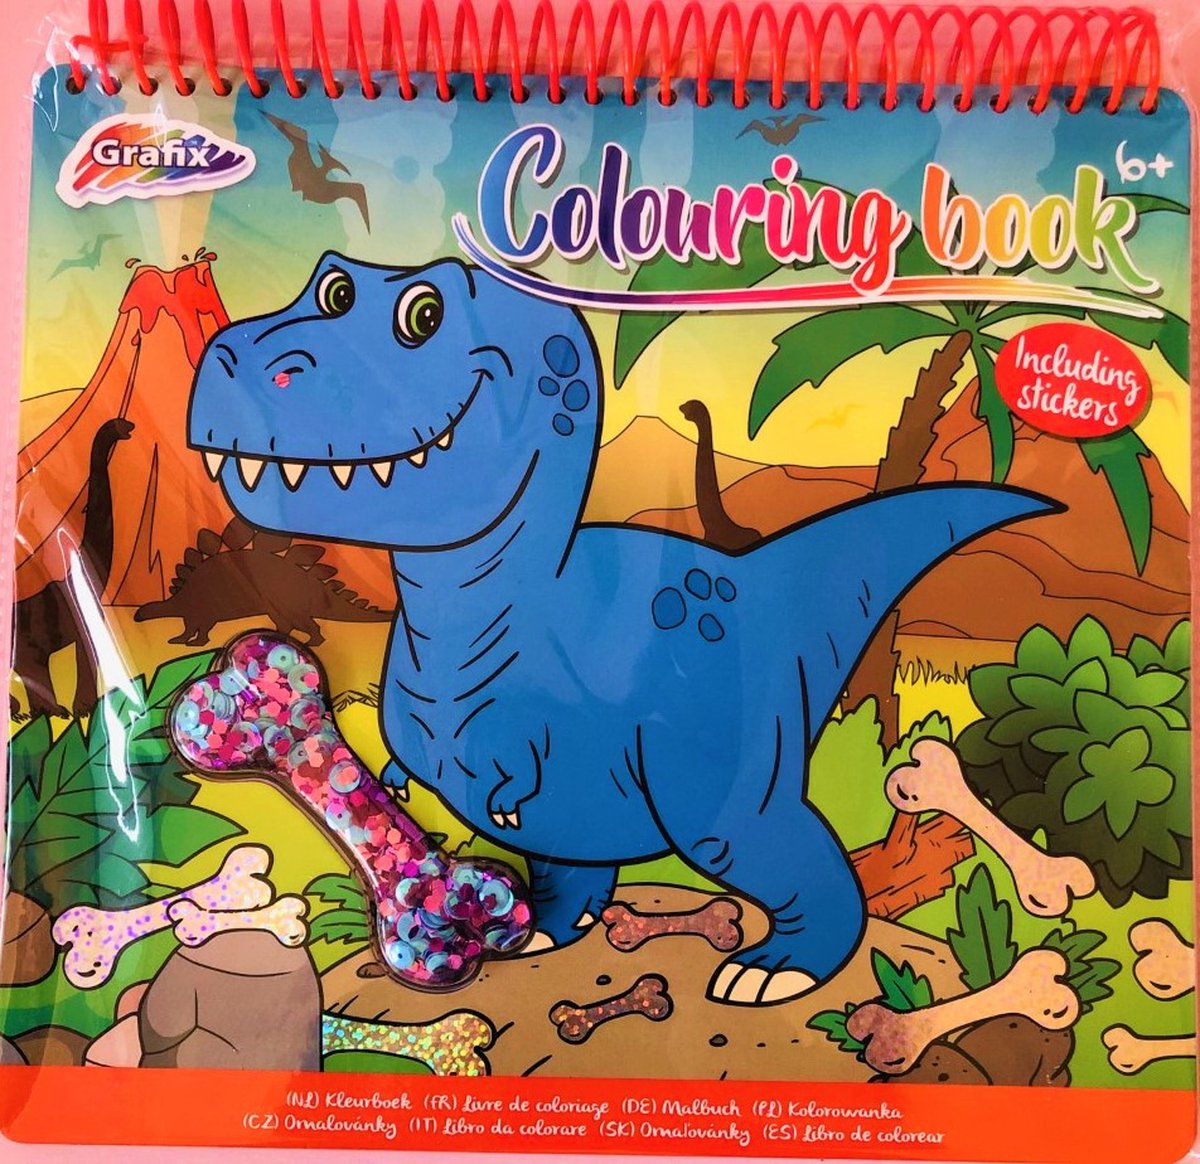 Stevige en Prachtige Dinosaurus Kleurboek met prachtige plaatjes, Stickers en Pailletten - EN 10 GRATIS TUBES GLITTER!  Van kwaliteitsmerk GRAFIX!